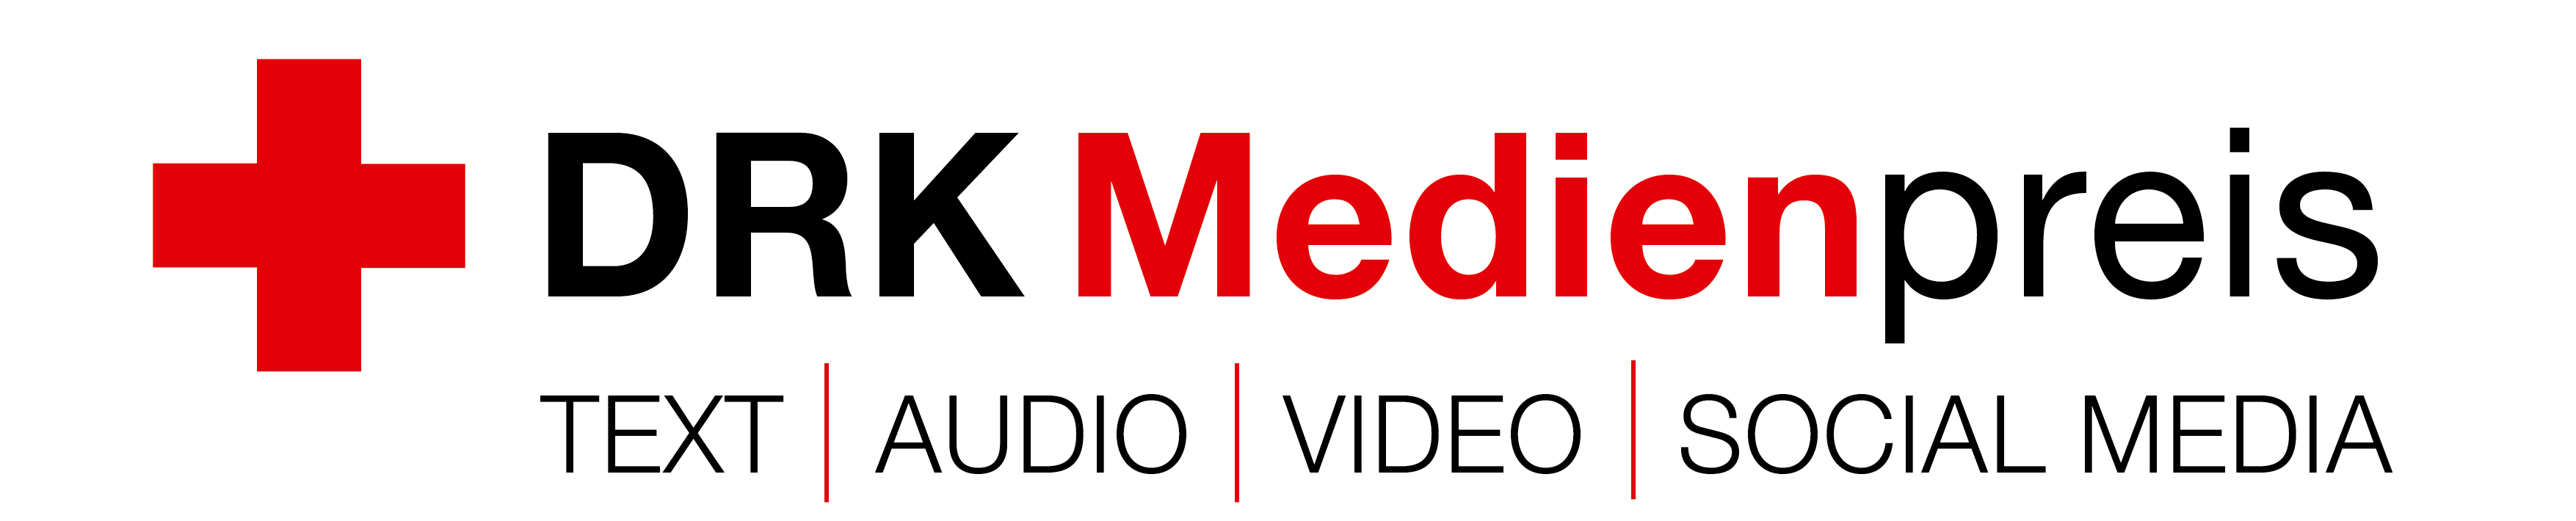 DRK-Medienpreis-Logo-e1688642802981 Feierliche Verleihung des DRK Medienpreises am 17.08. in Bremen